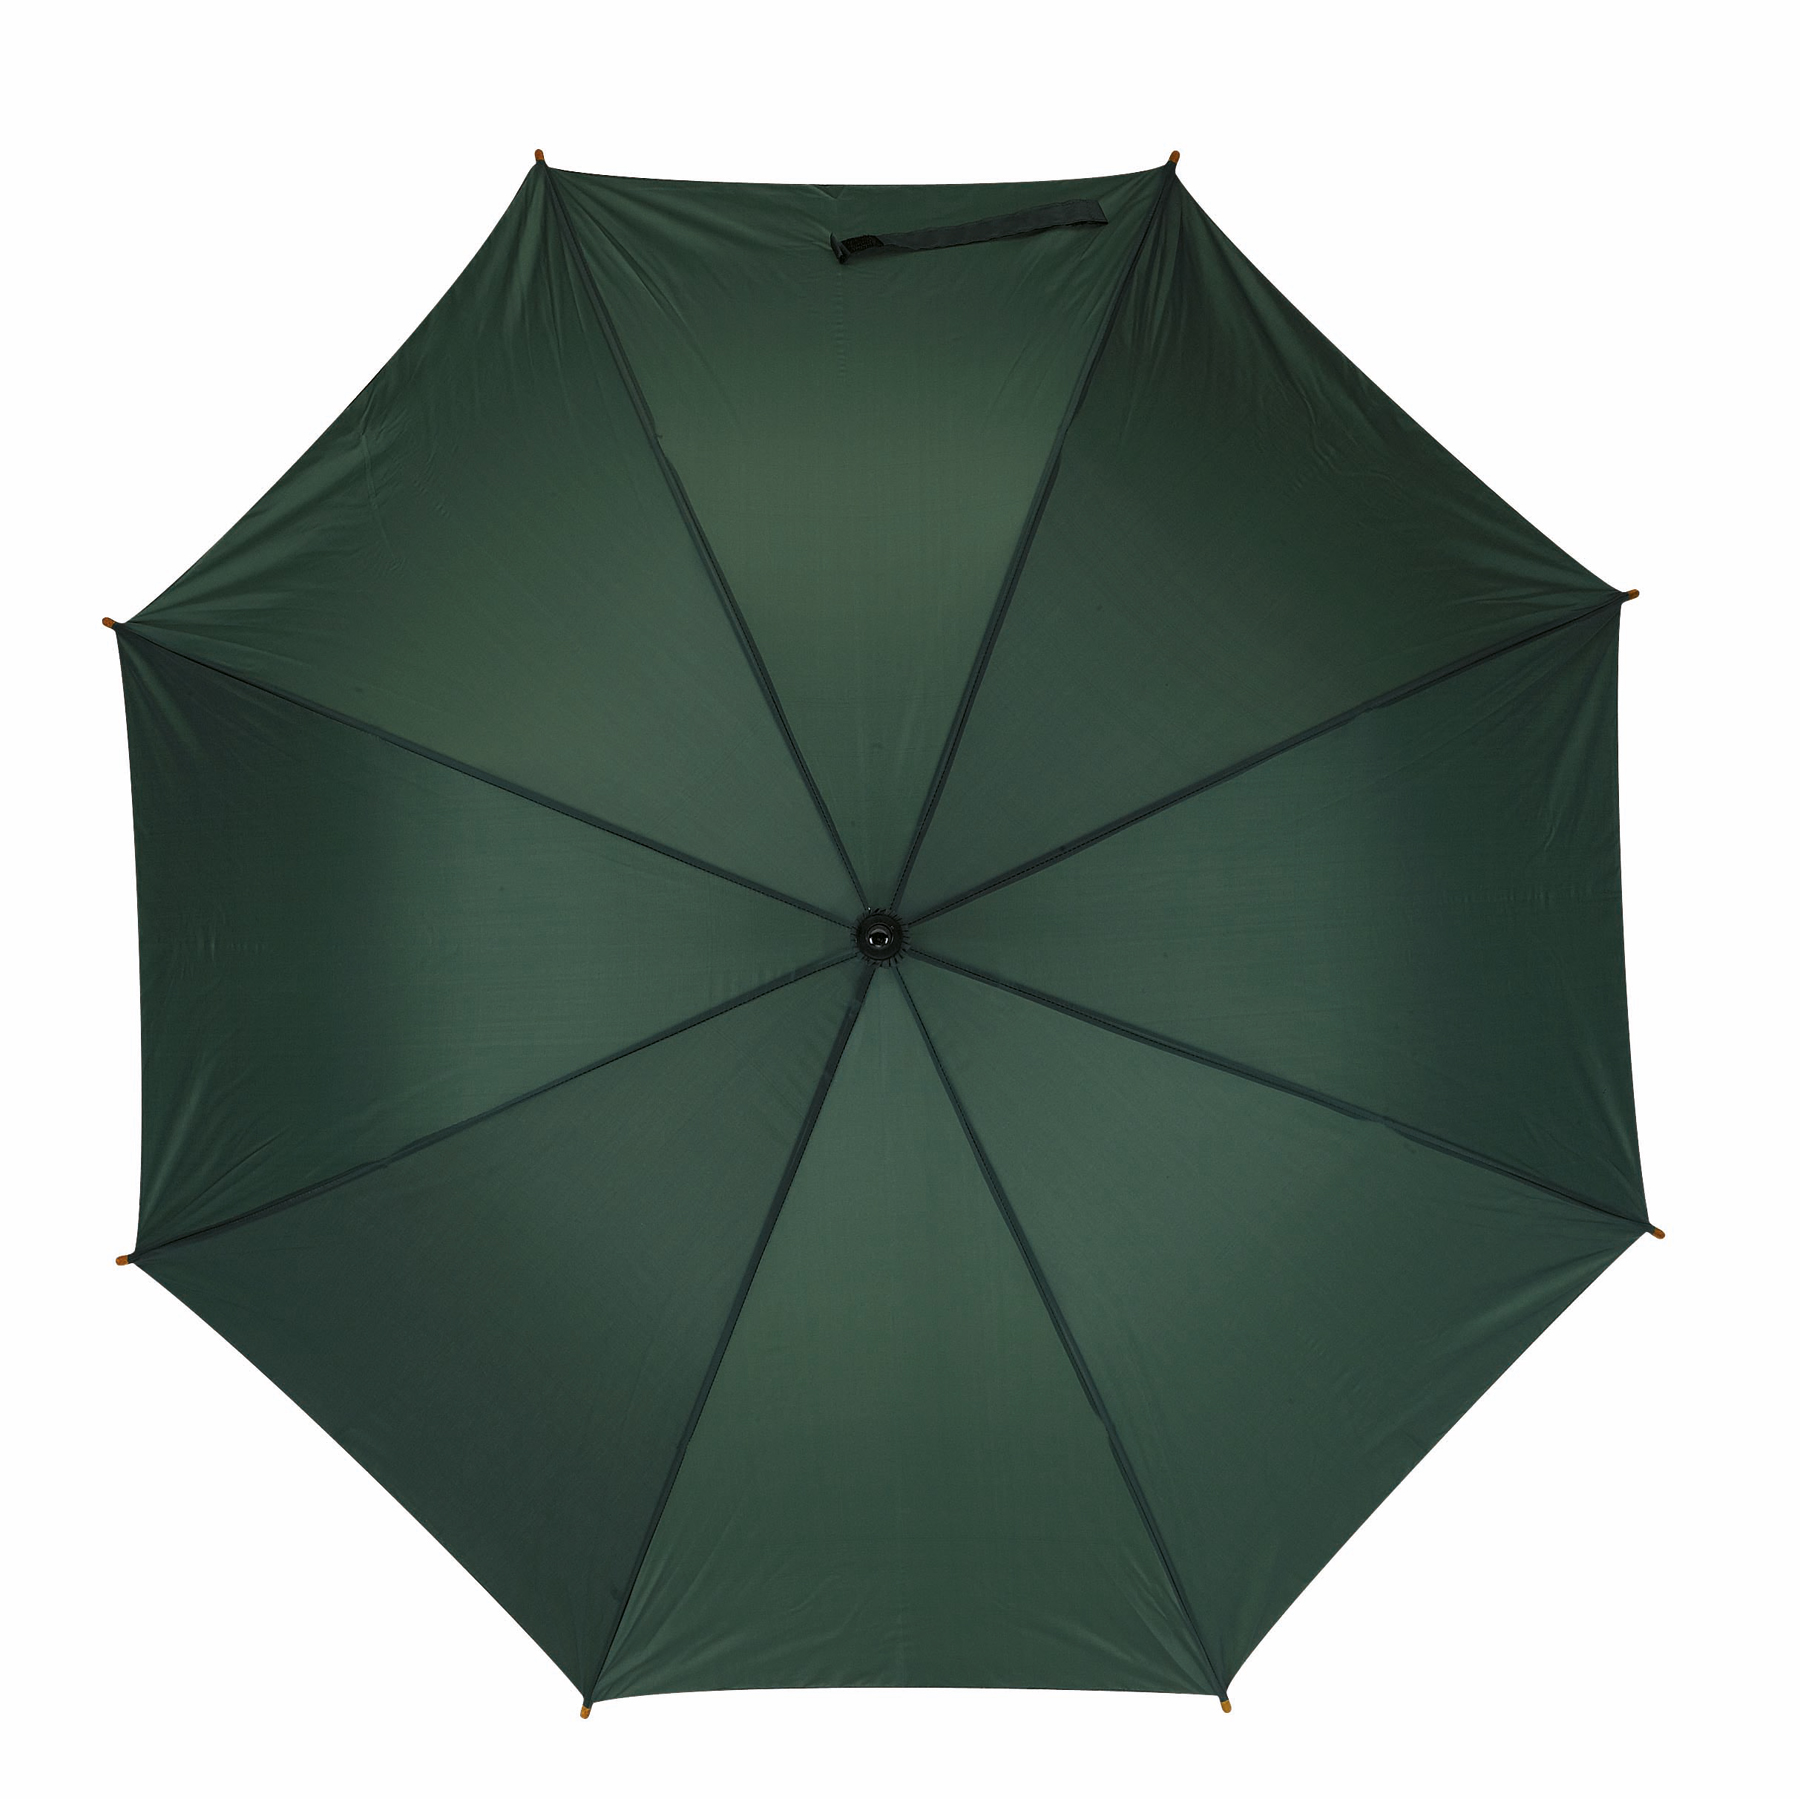 Automatyczny parasol TANGO